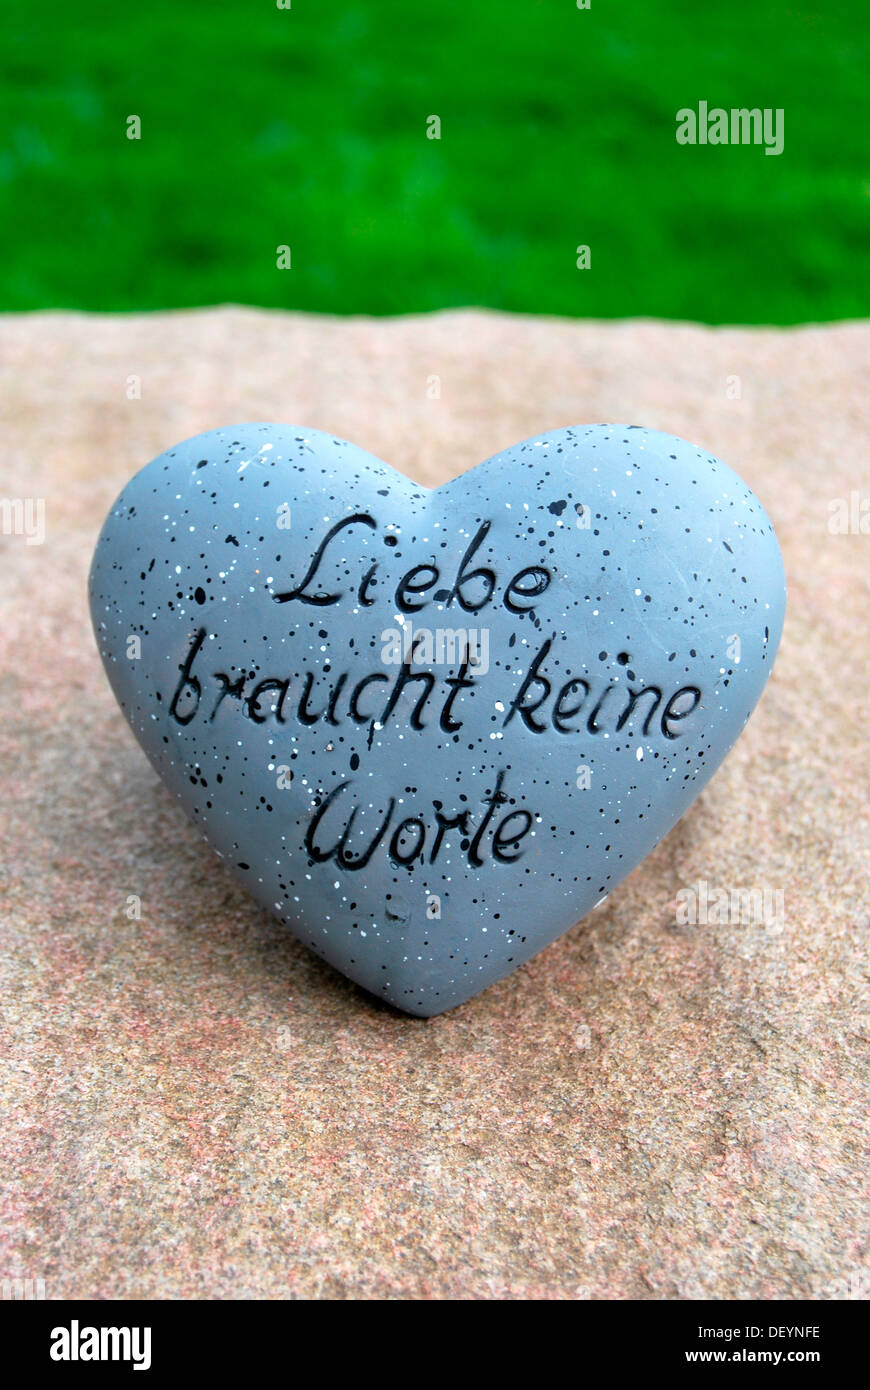 Liebe braucht keine Worte', German for love needs no words, written on heart Stock Photo